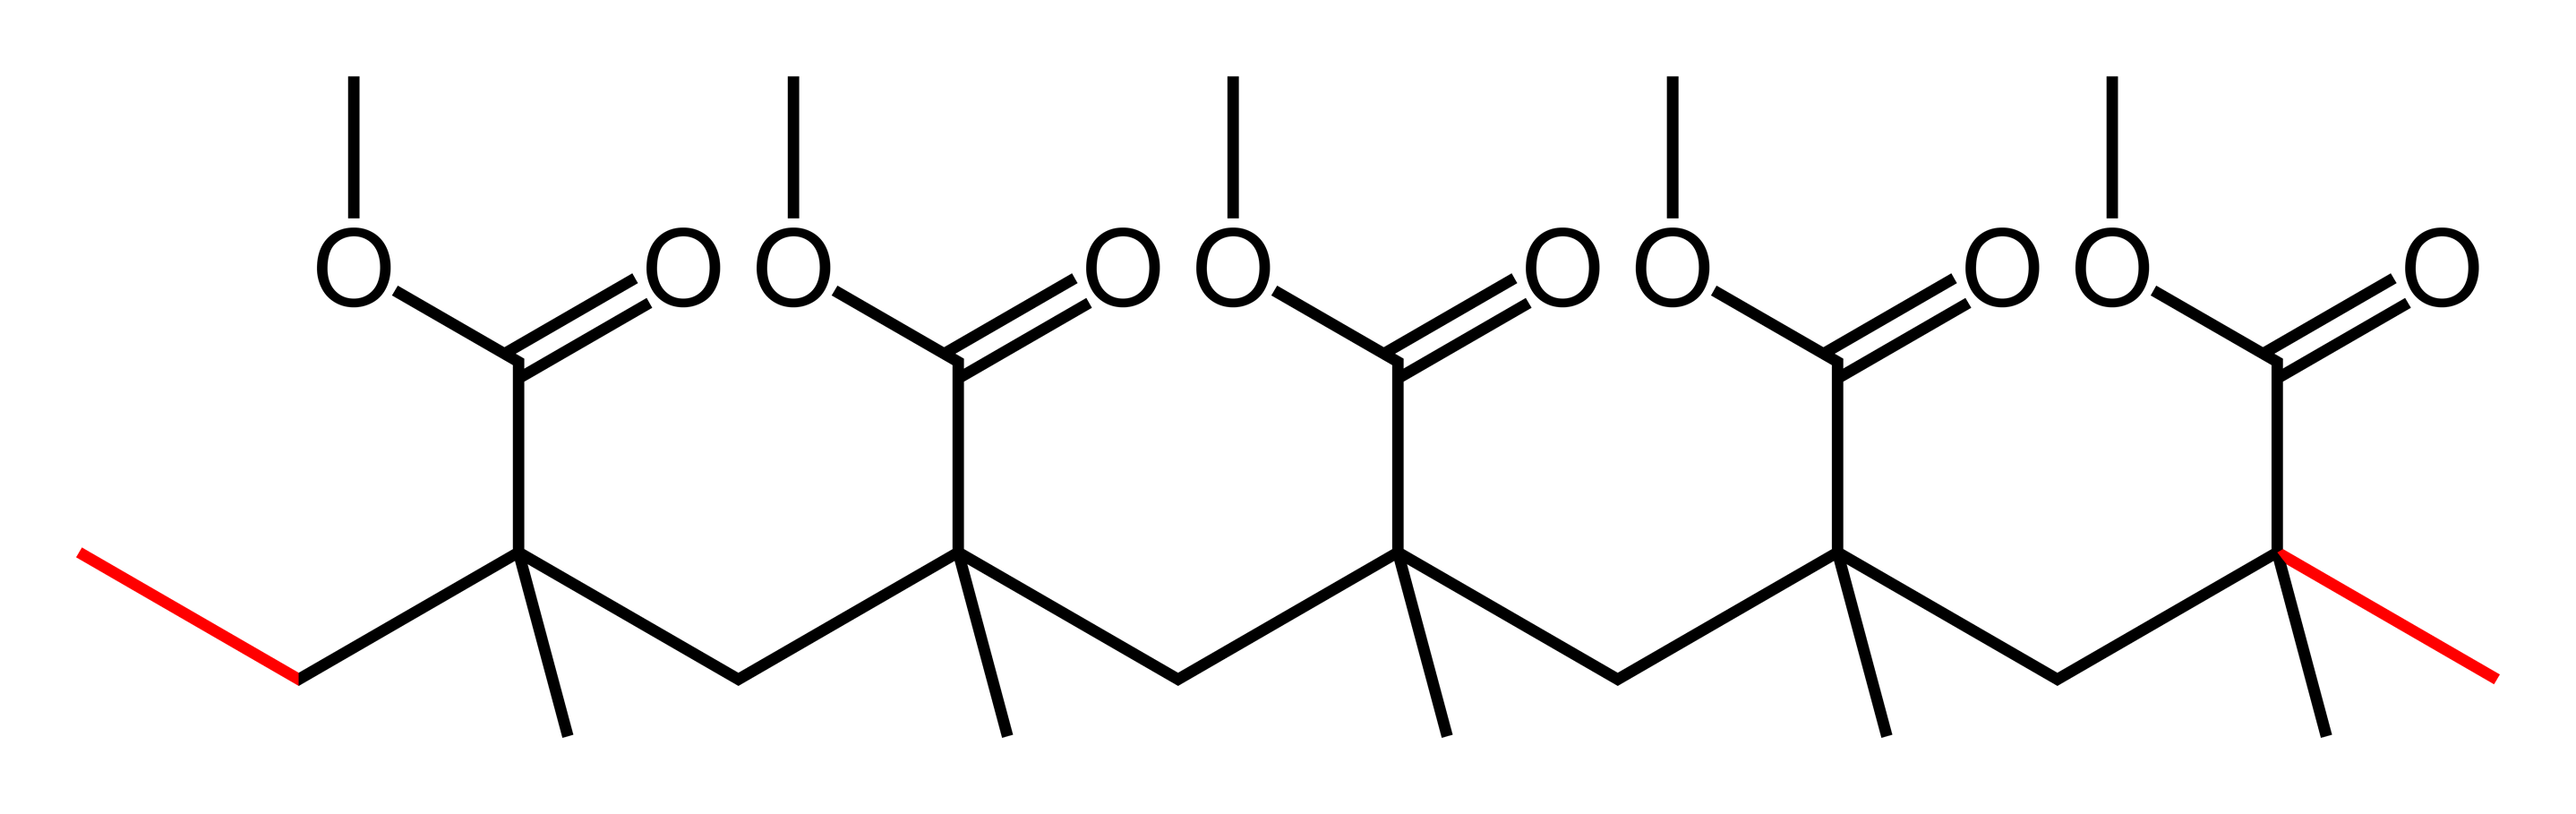 Chemische Strukturformel von Acrylglas.